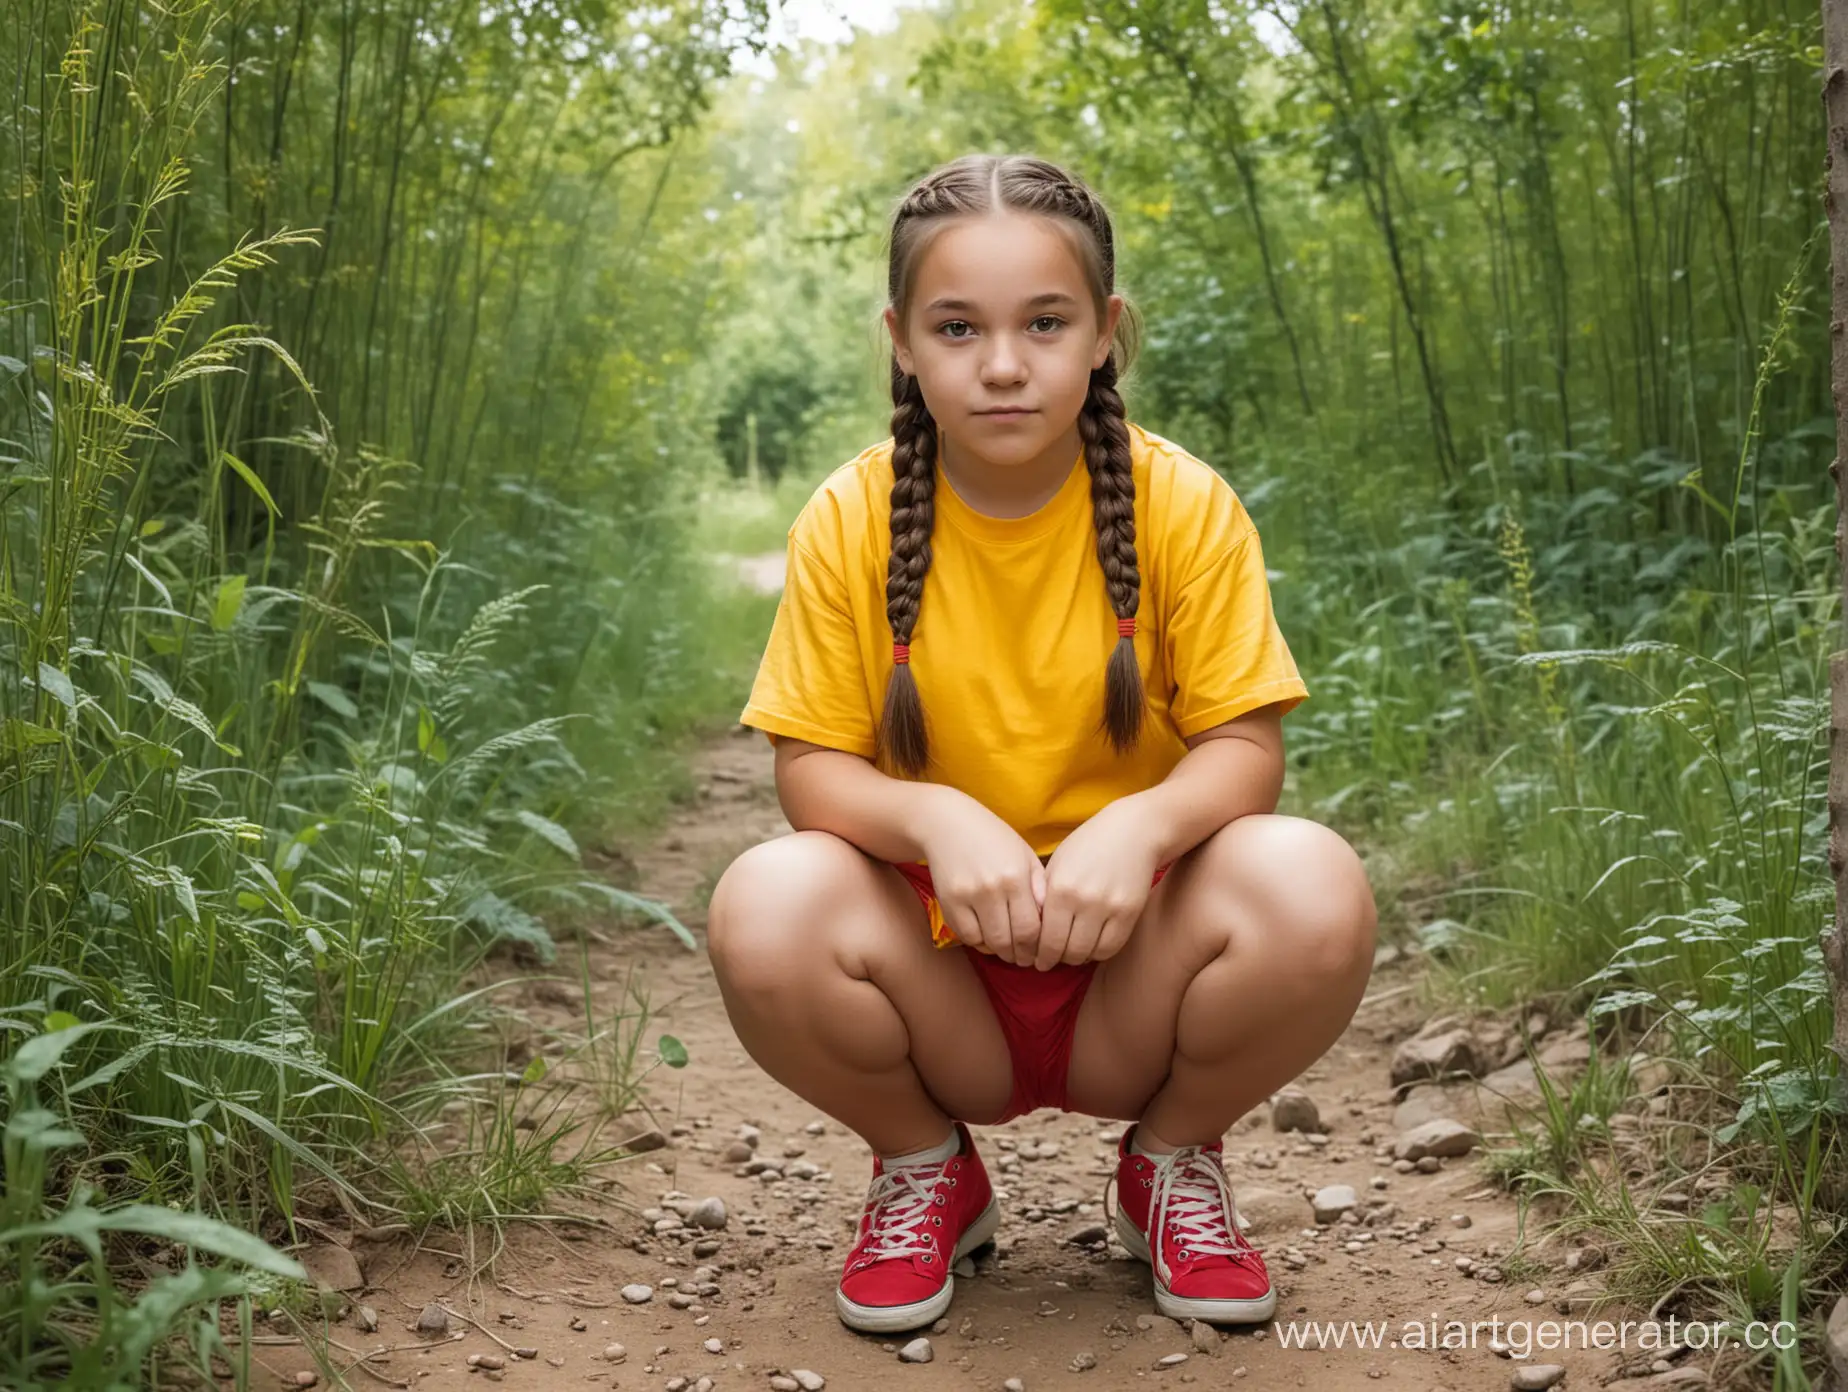 Слегка полноватая девочка 12 лет с двумя косичками, круглым лицом, одетая в жёлтую футболку и красные шорты, сидит на корточках на природе. Вид спереди